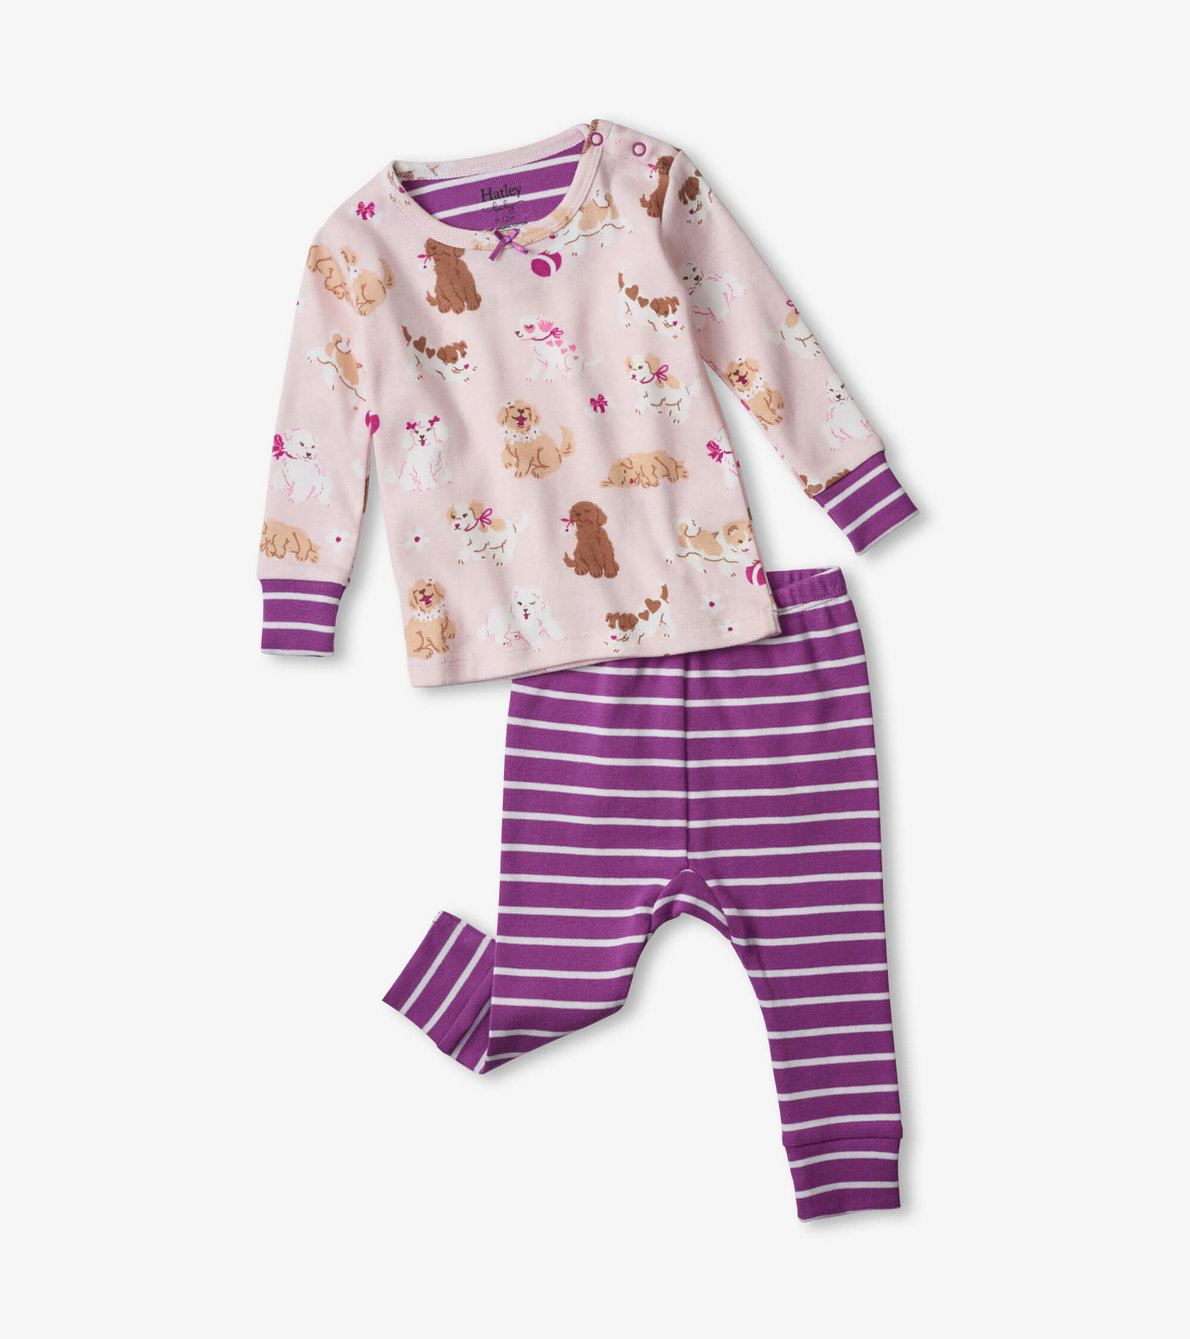 View larger image of Flower Pups Organic Cotton Baby Pajama Set